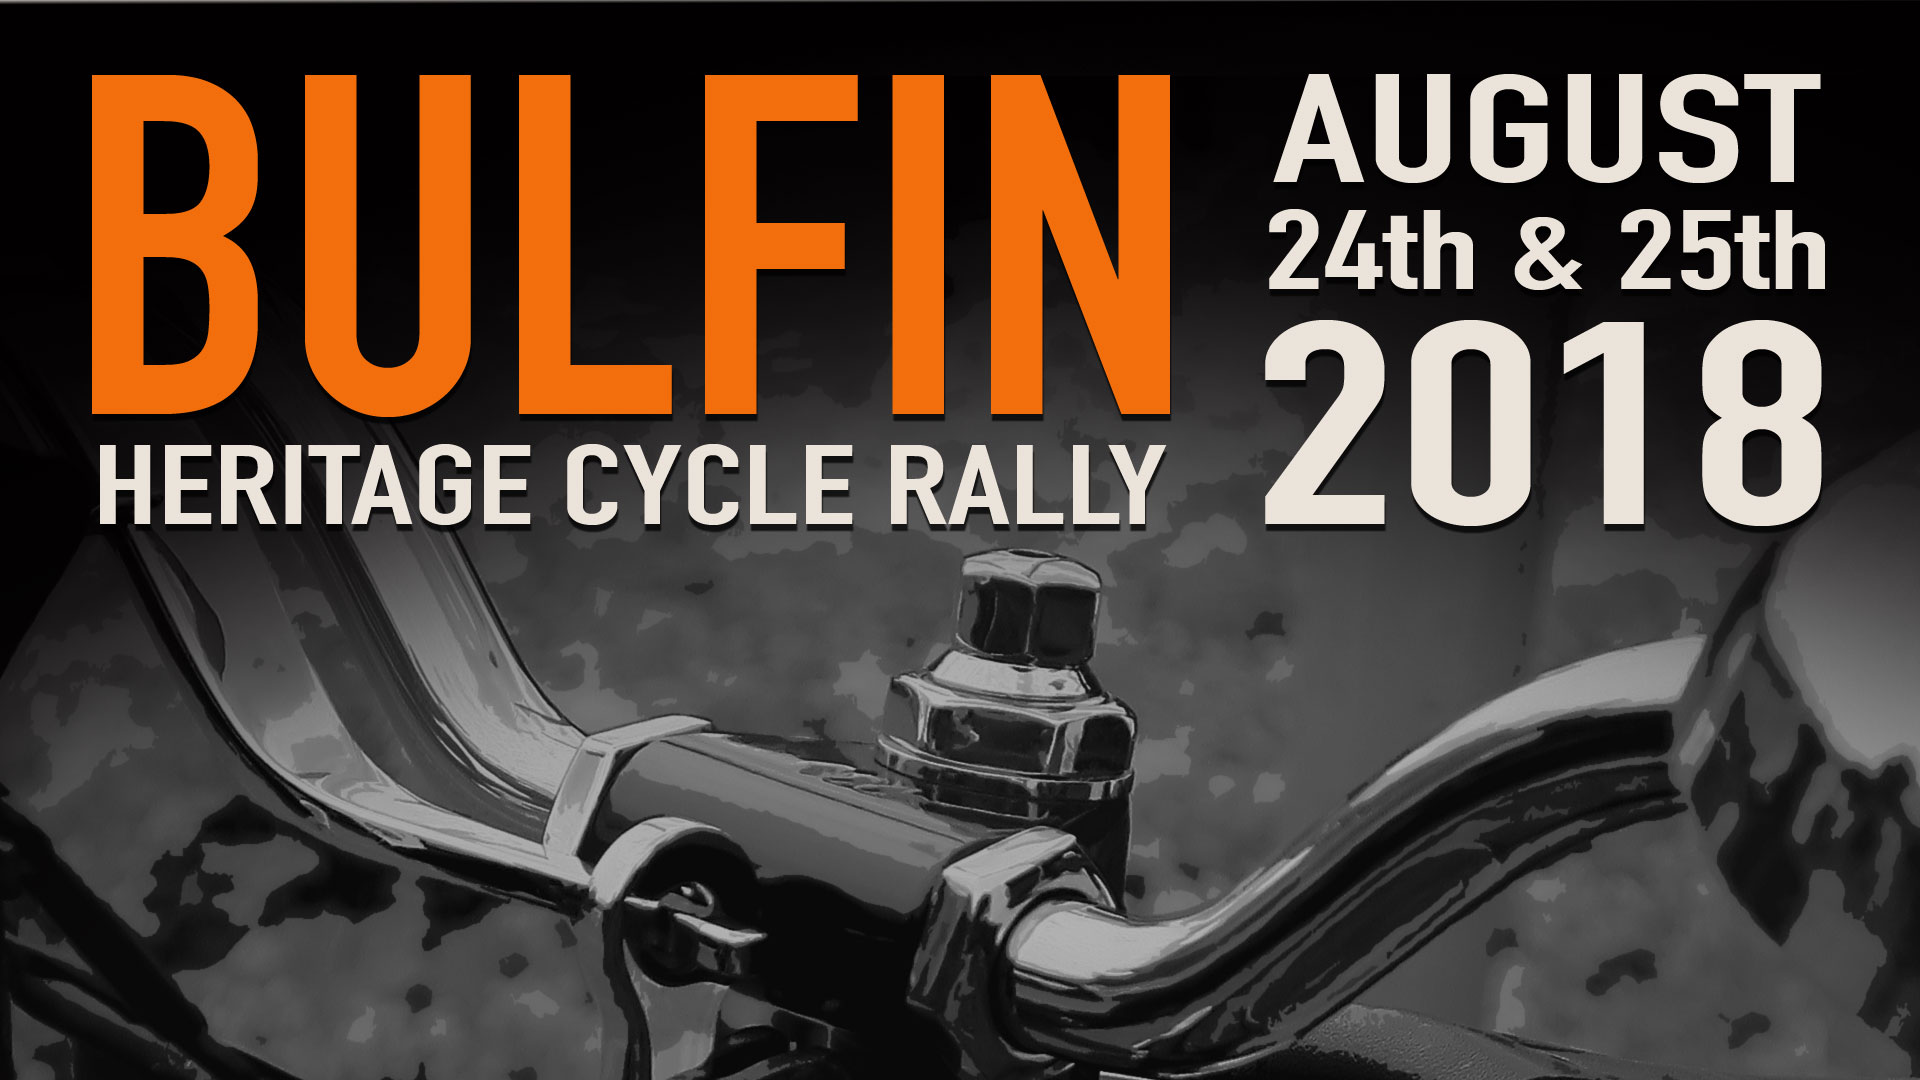 Bulfin Heritage Cycle Rally 2018 Poster